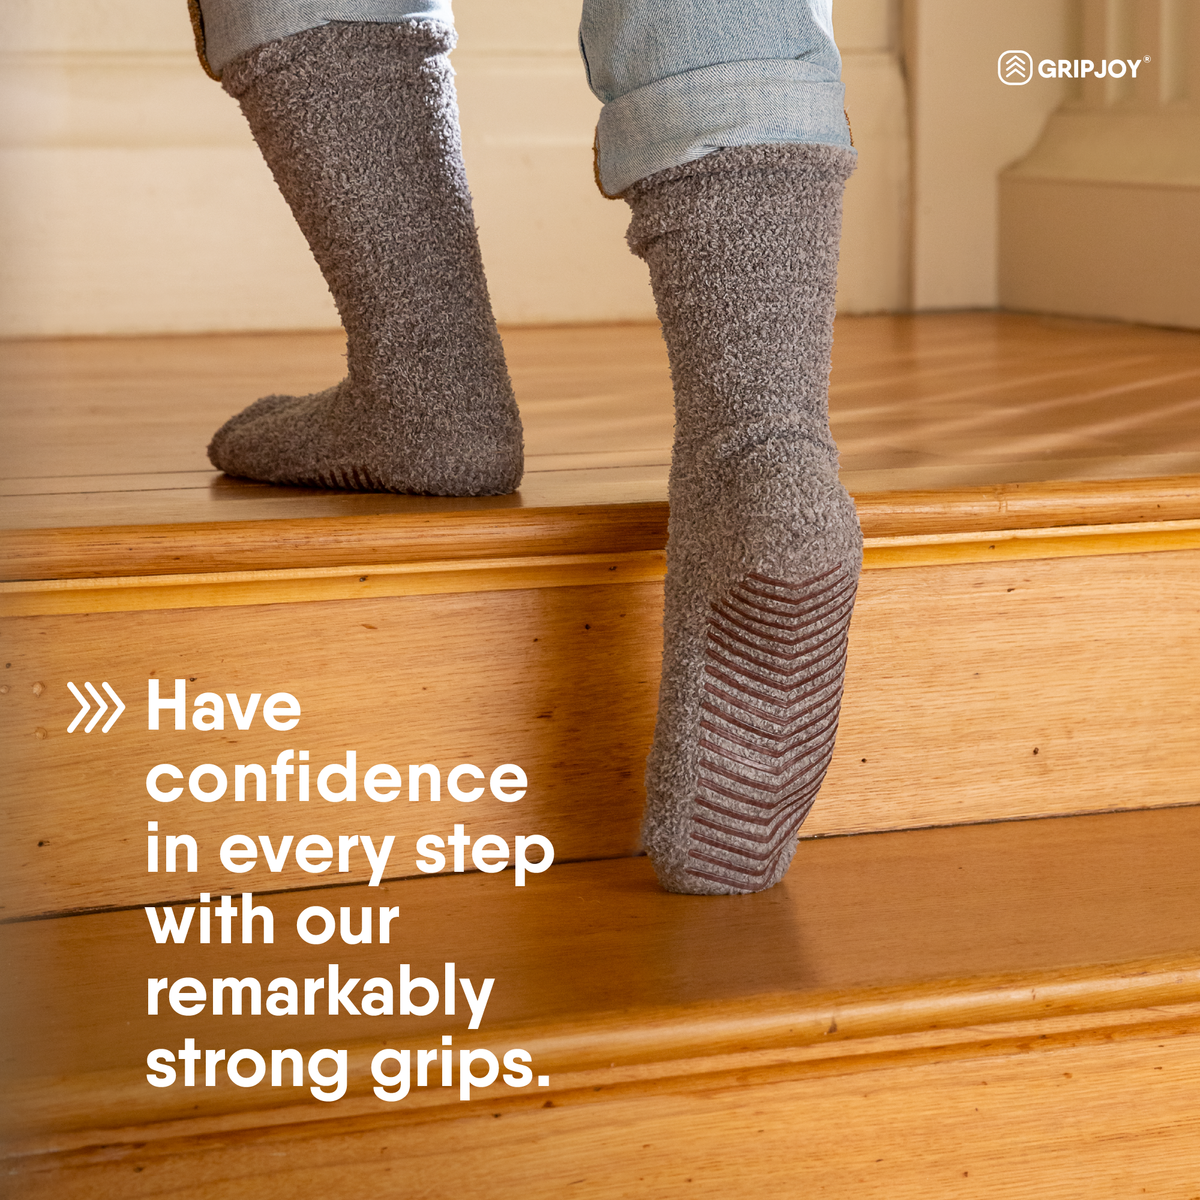 Men's Black/Grey Diabetic Socks with Grippers x3 Pairs - Gripjoy Socks